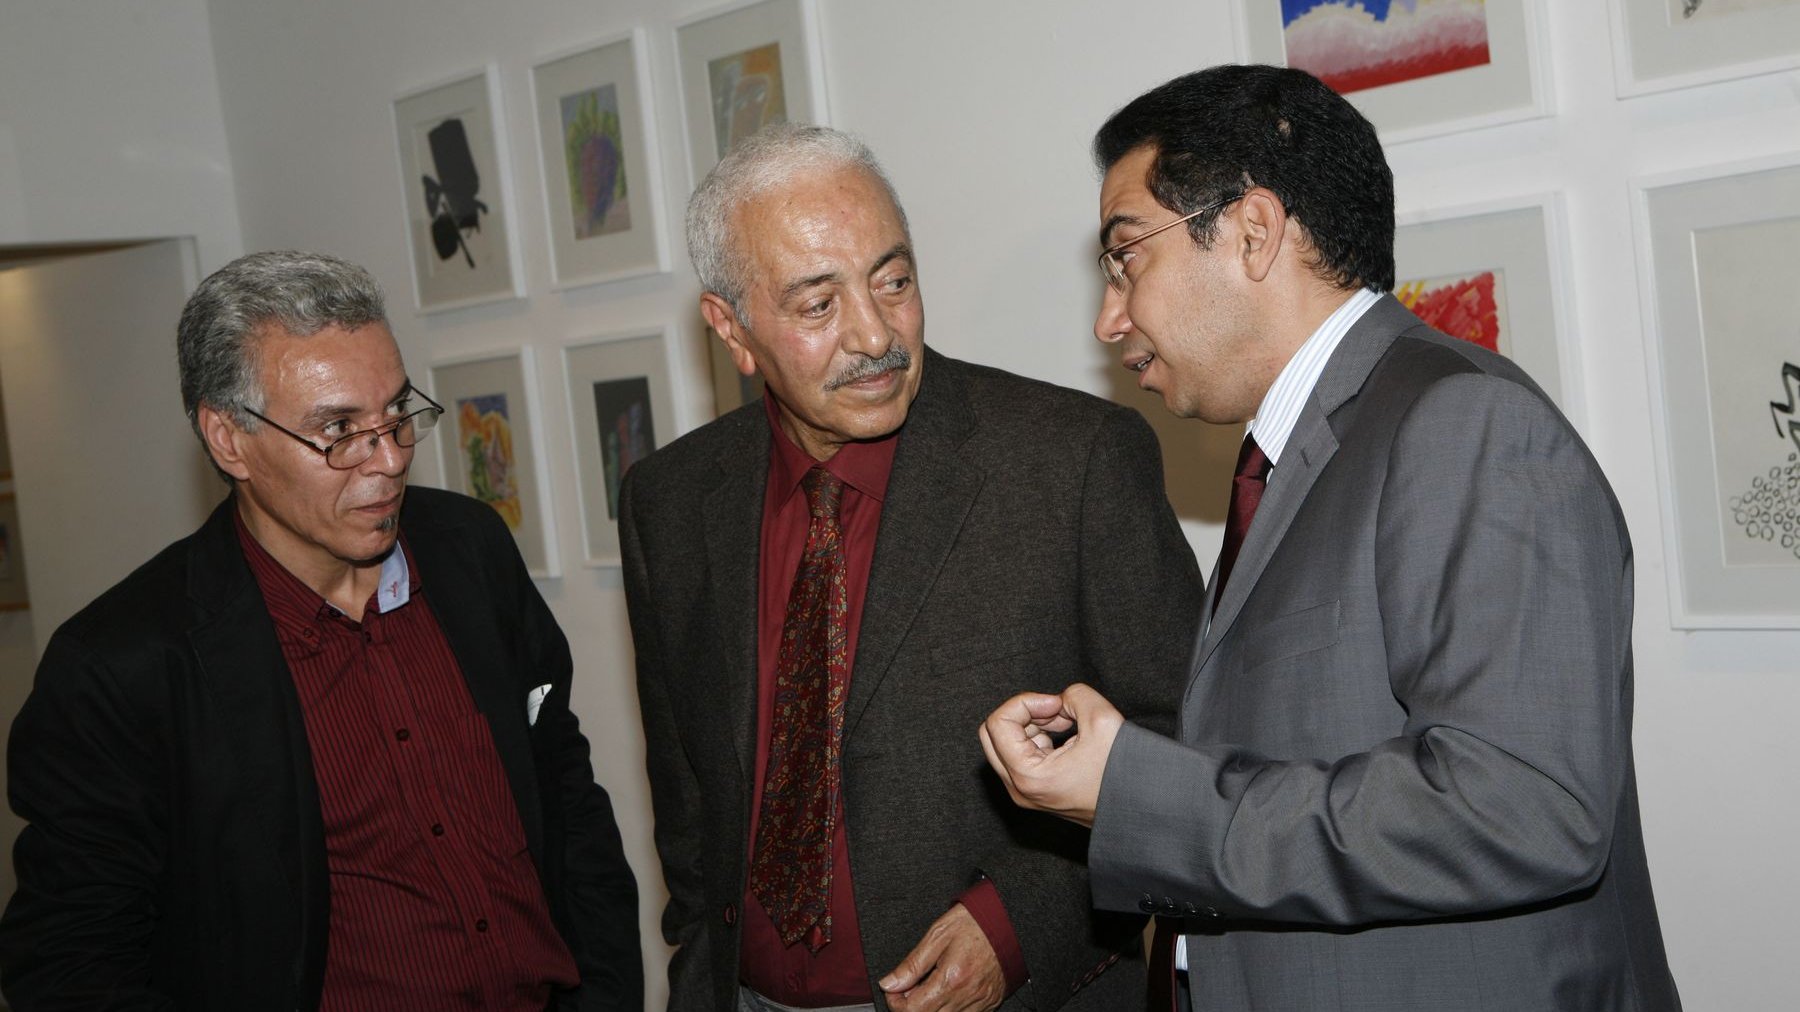 محمد شبعة في حوار سابق مع فريد الزاهي وعزيز داكي في أحد معارض الراحل سنة 2010
